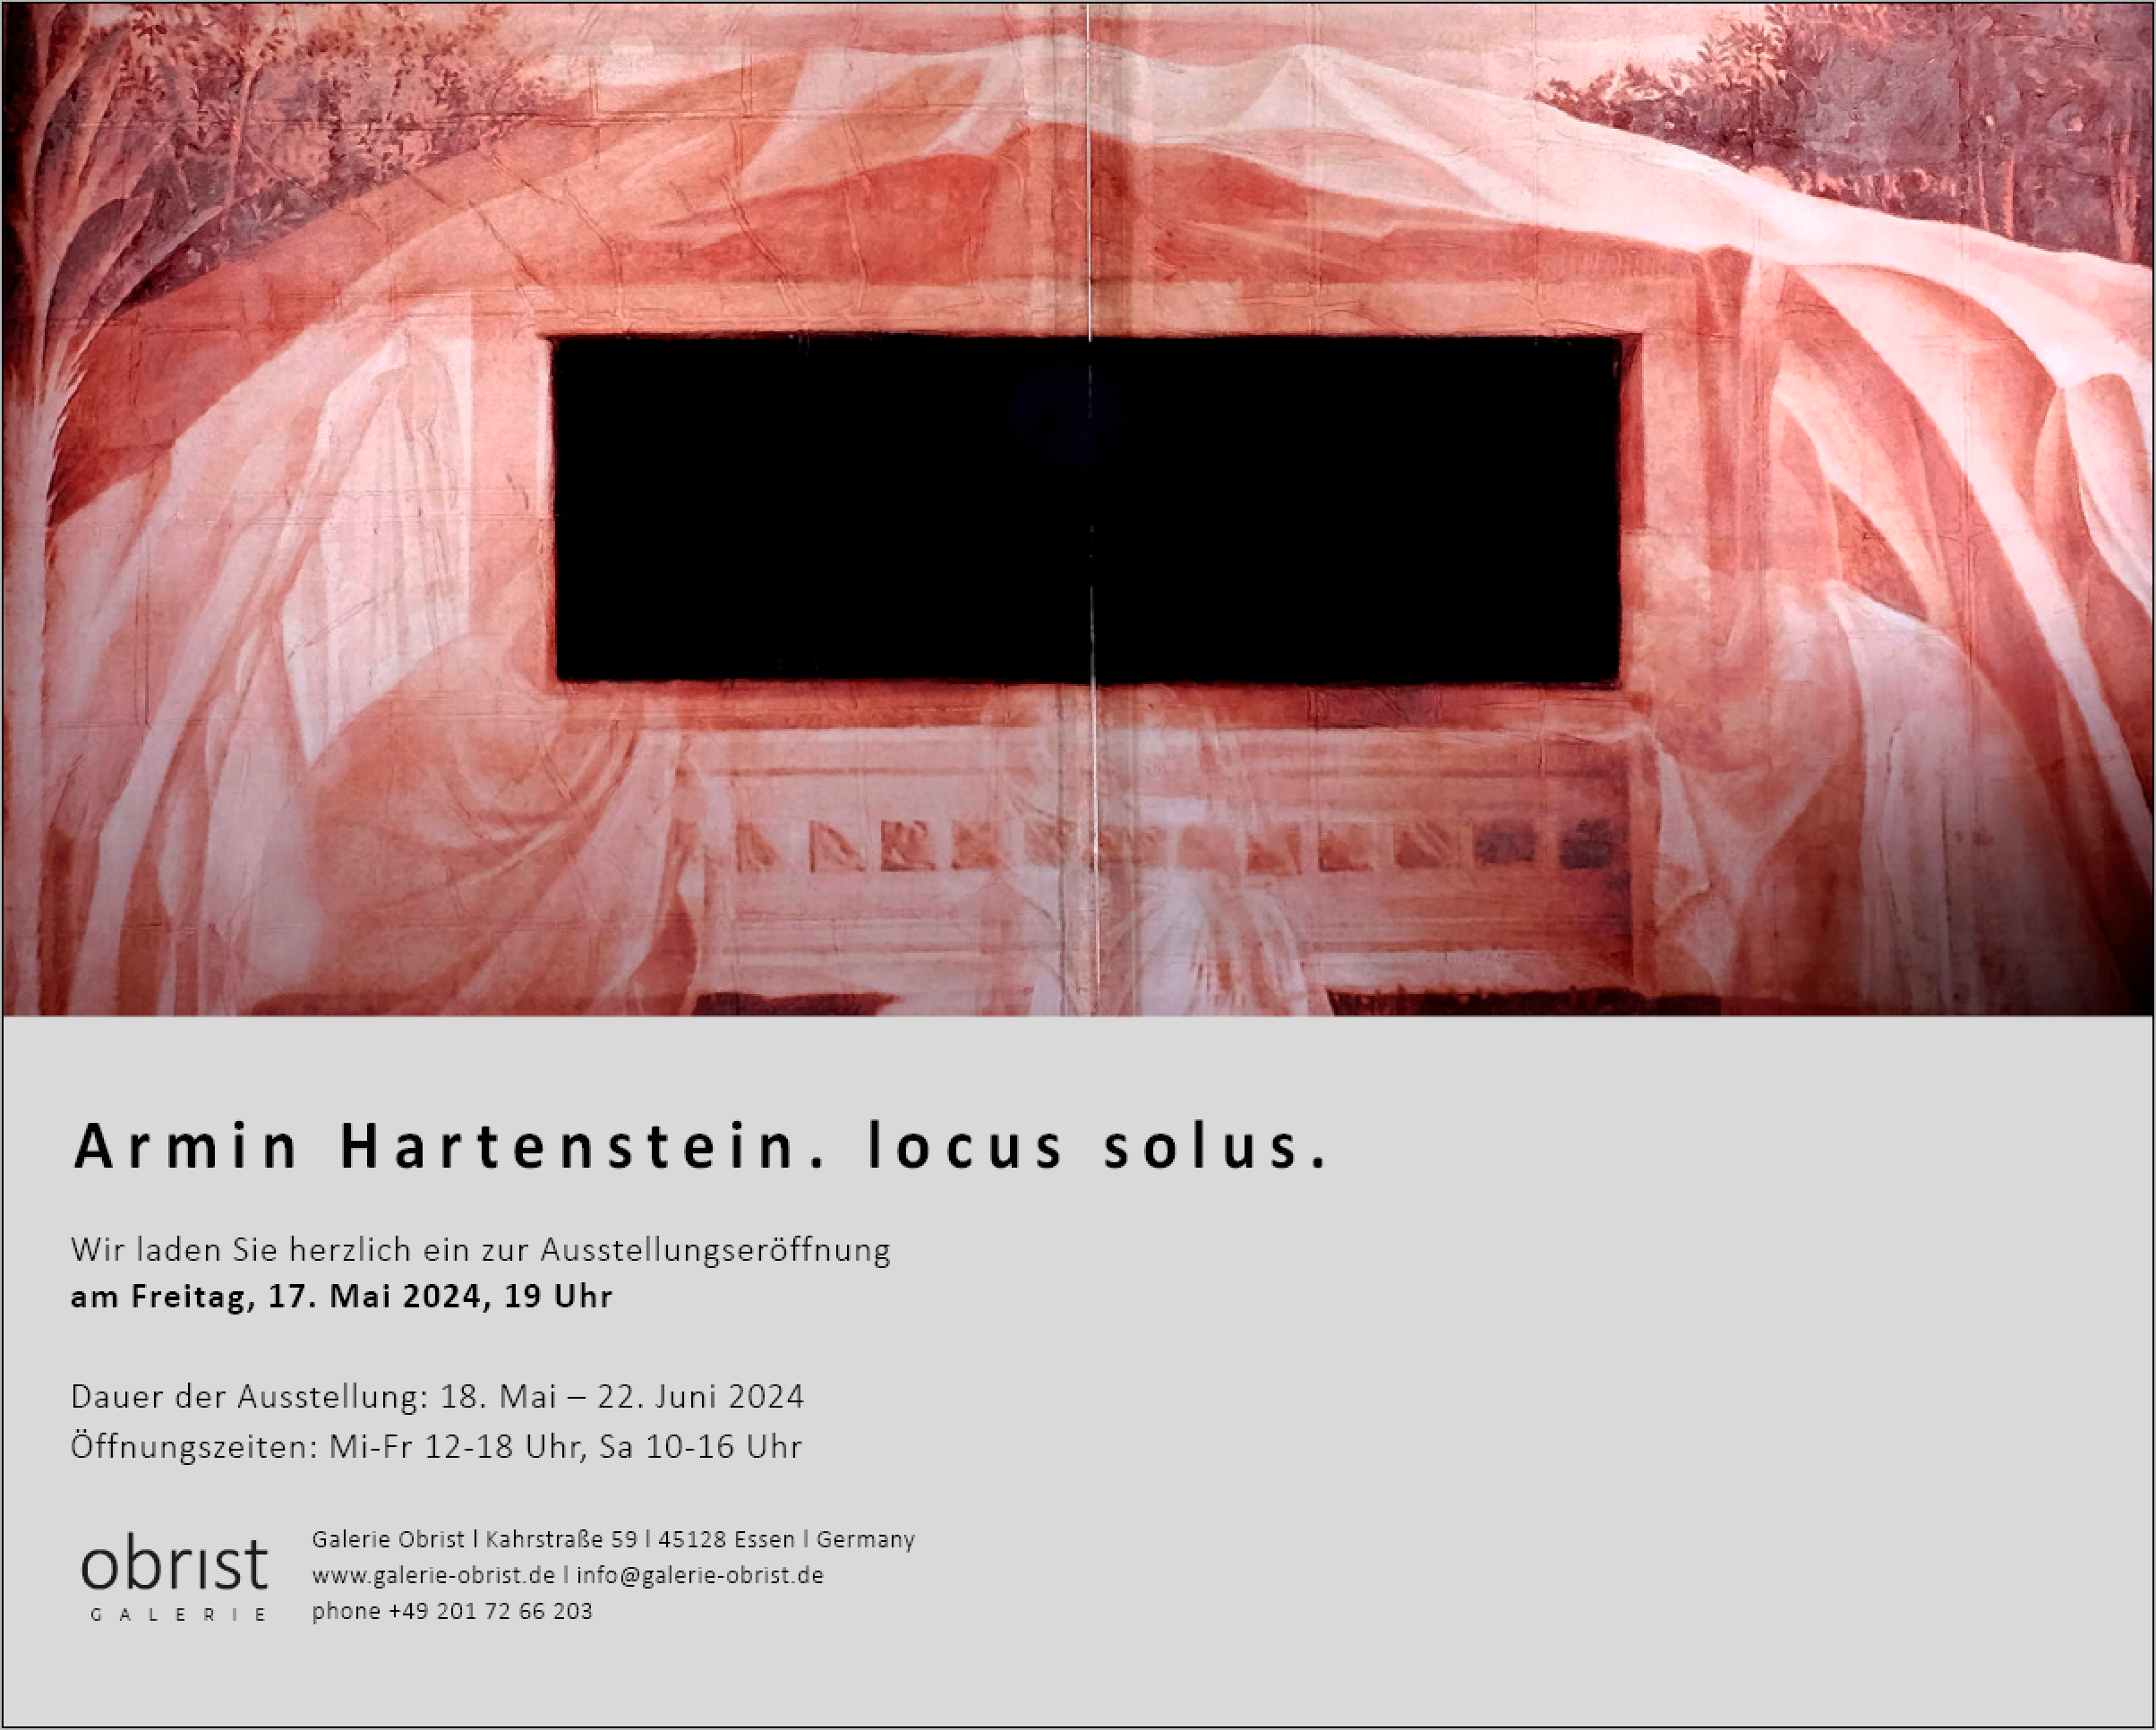 Armin Hartenstein locus solus